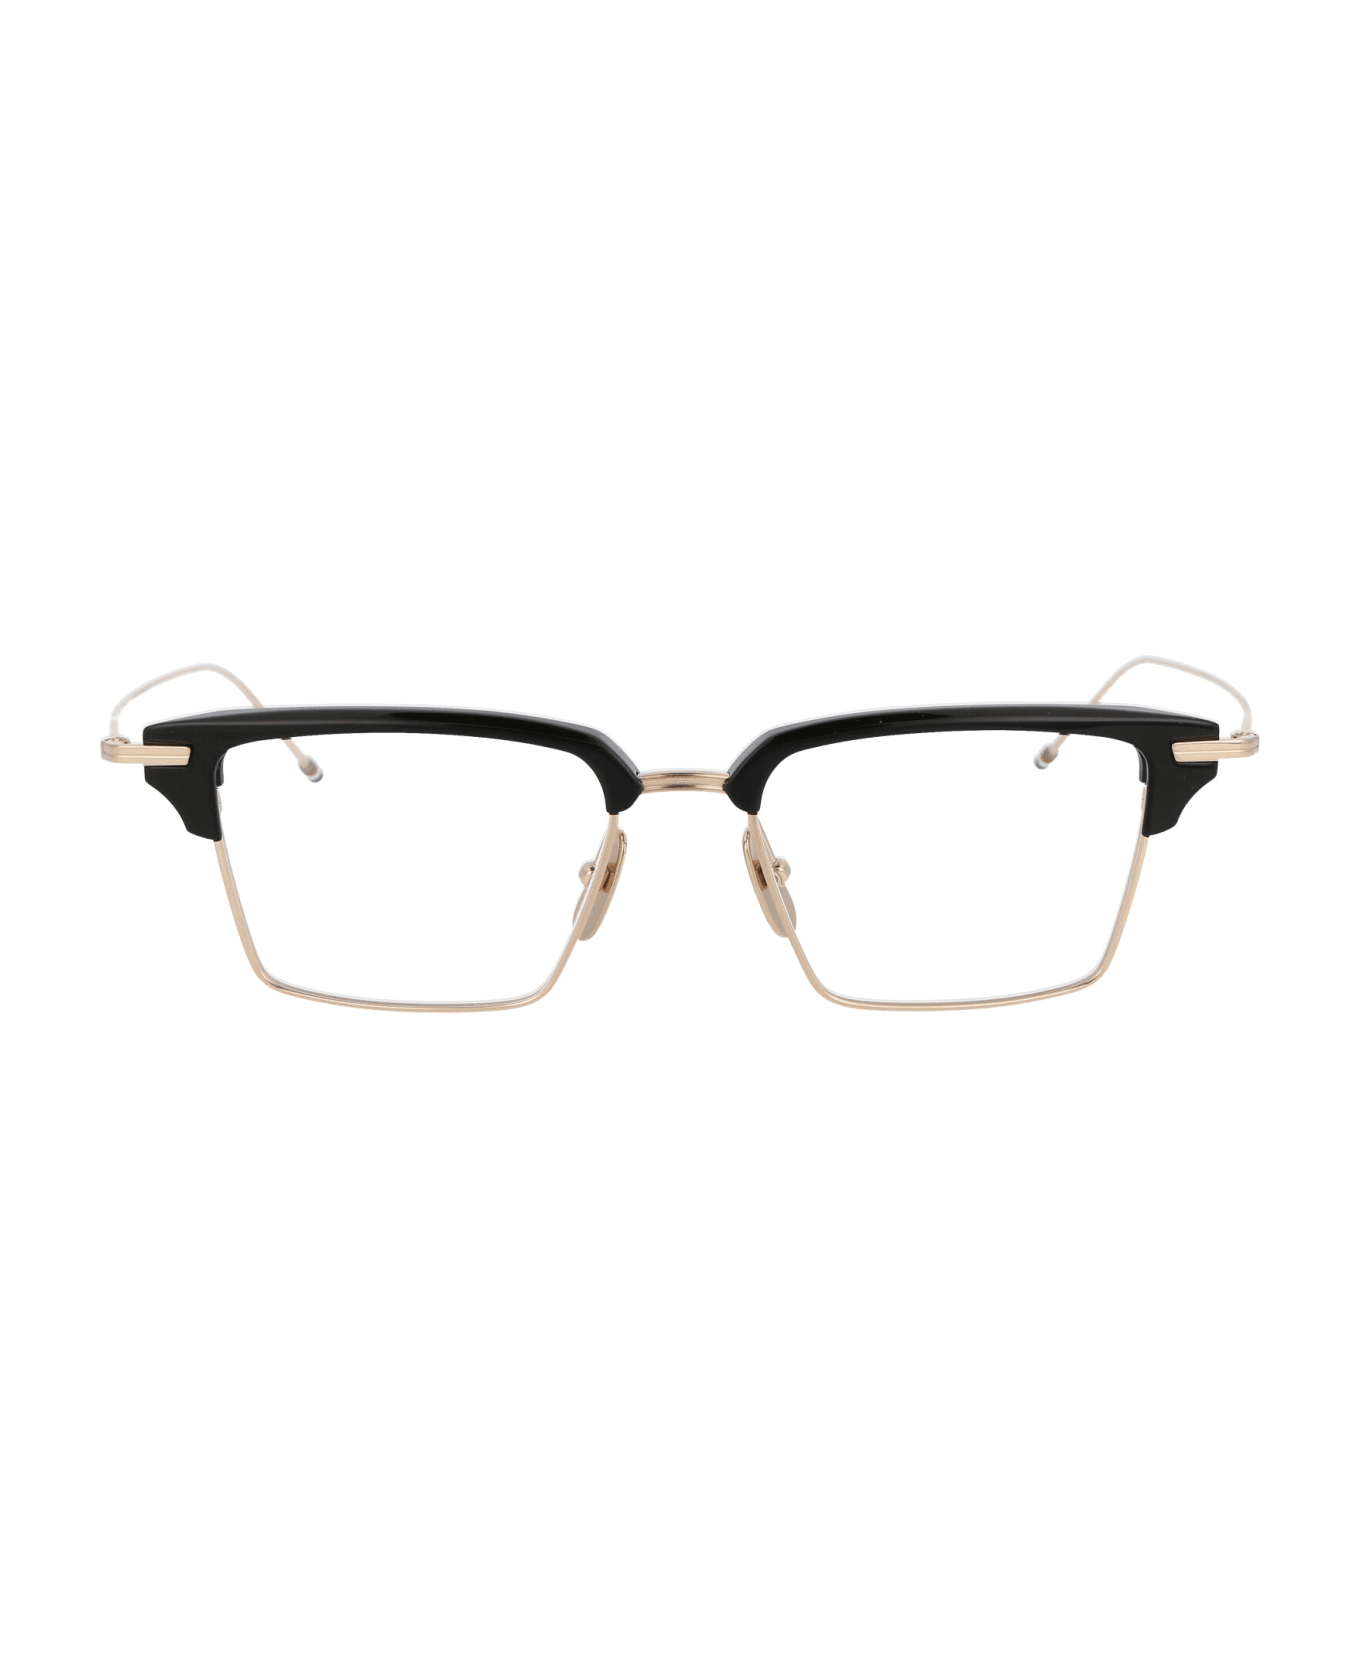 Thom Browne Tb-422 Glasses - 01 WHITE GOLD - BLACK W/ CLEAR